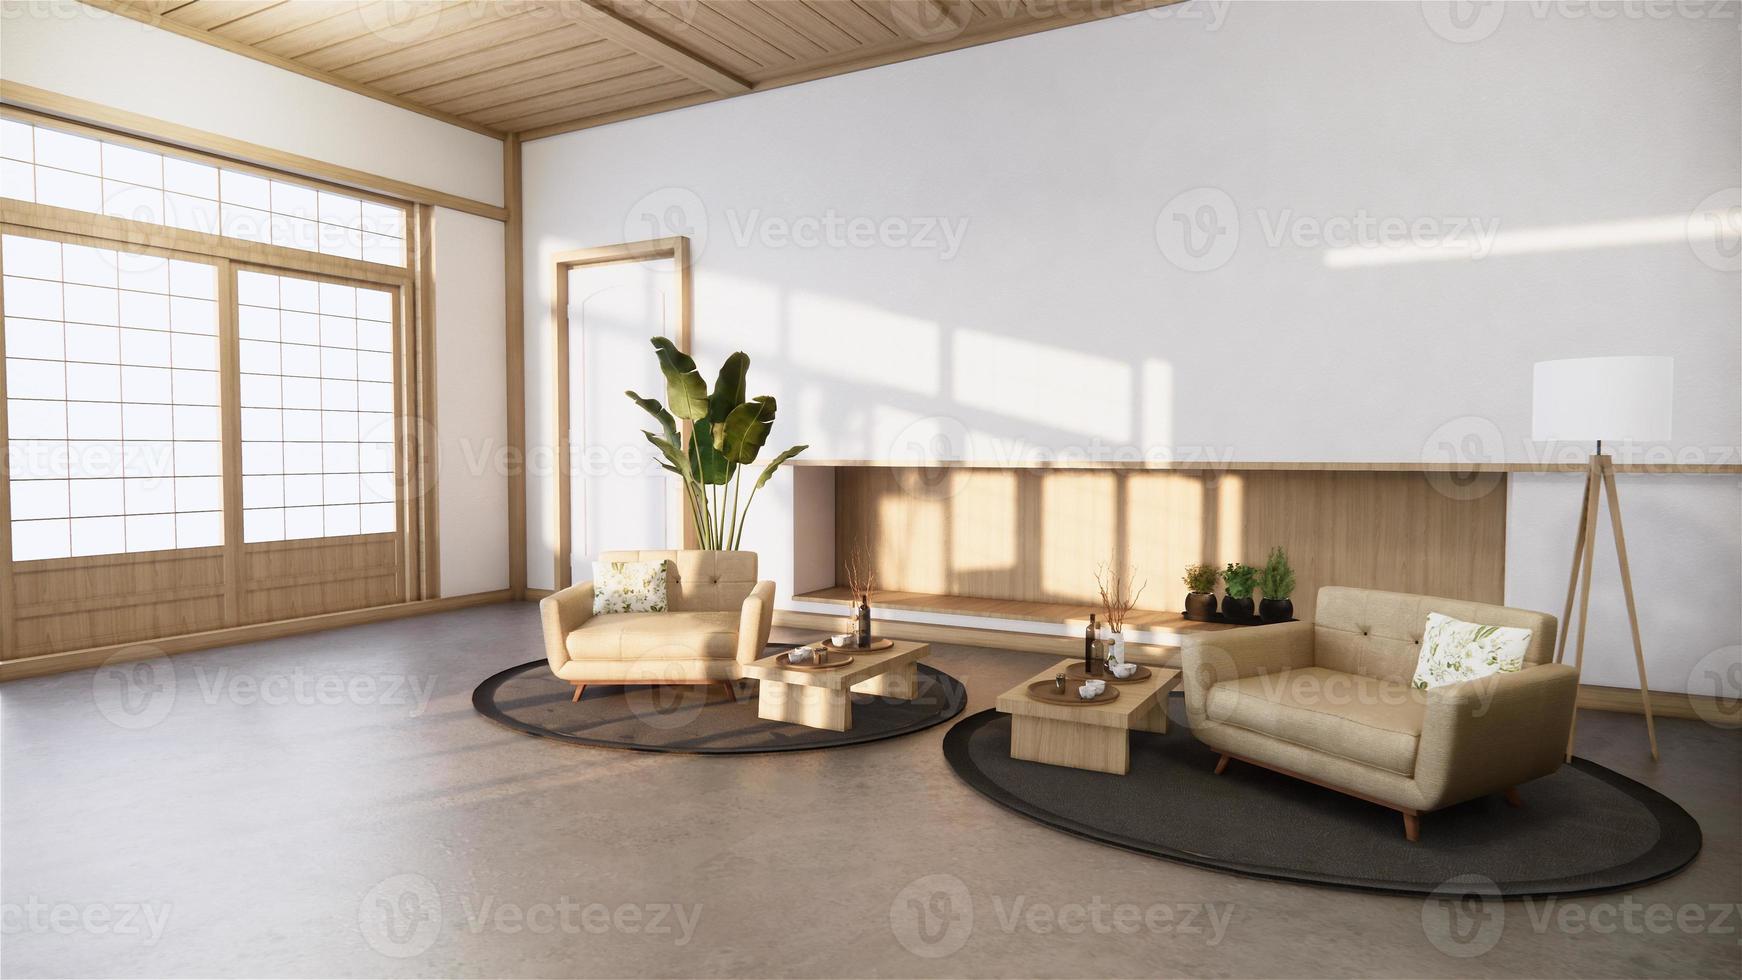 sala de estilo zen y decoración de diseño de madera, tono tierra representación 3D foto